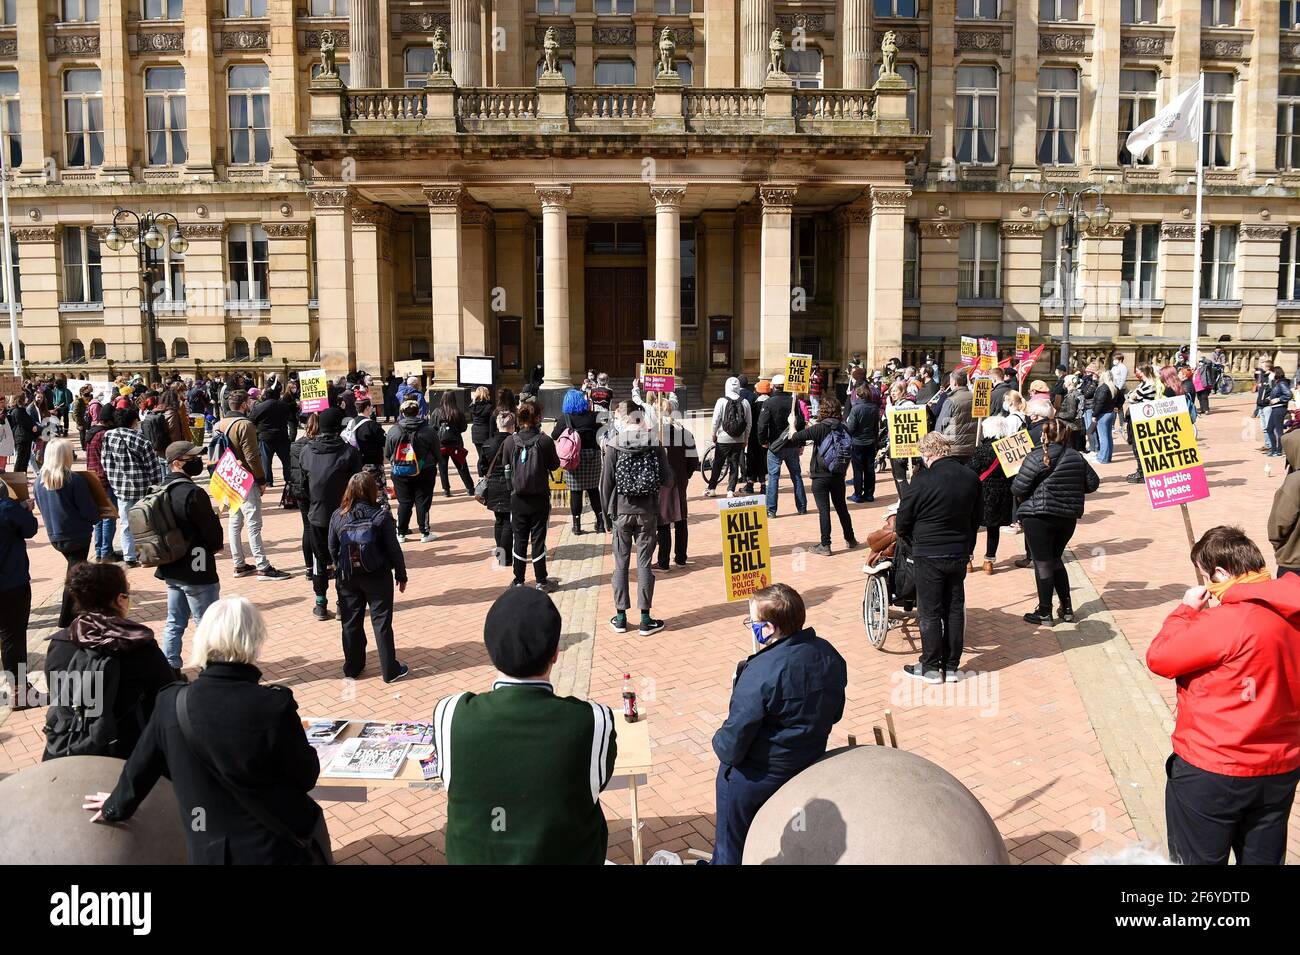 Manifestantes durante una protesta de "matar el proyecto de ley" contra el proyecto de ley de policía, crimen, sentencia y tribunales en Victoria Square, Birmingham. Fecha del cuadro: Sábado 3 de abril de 2021. Foto de stock